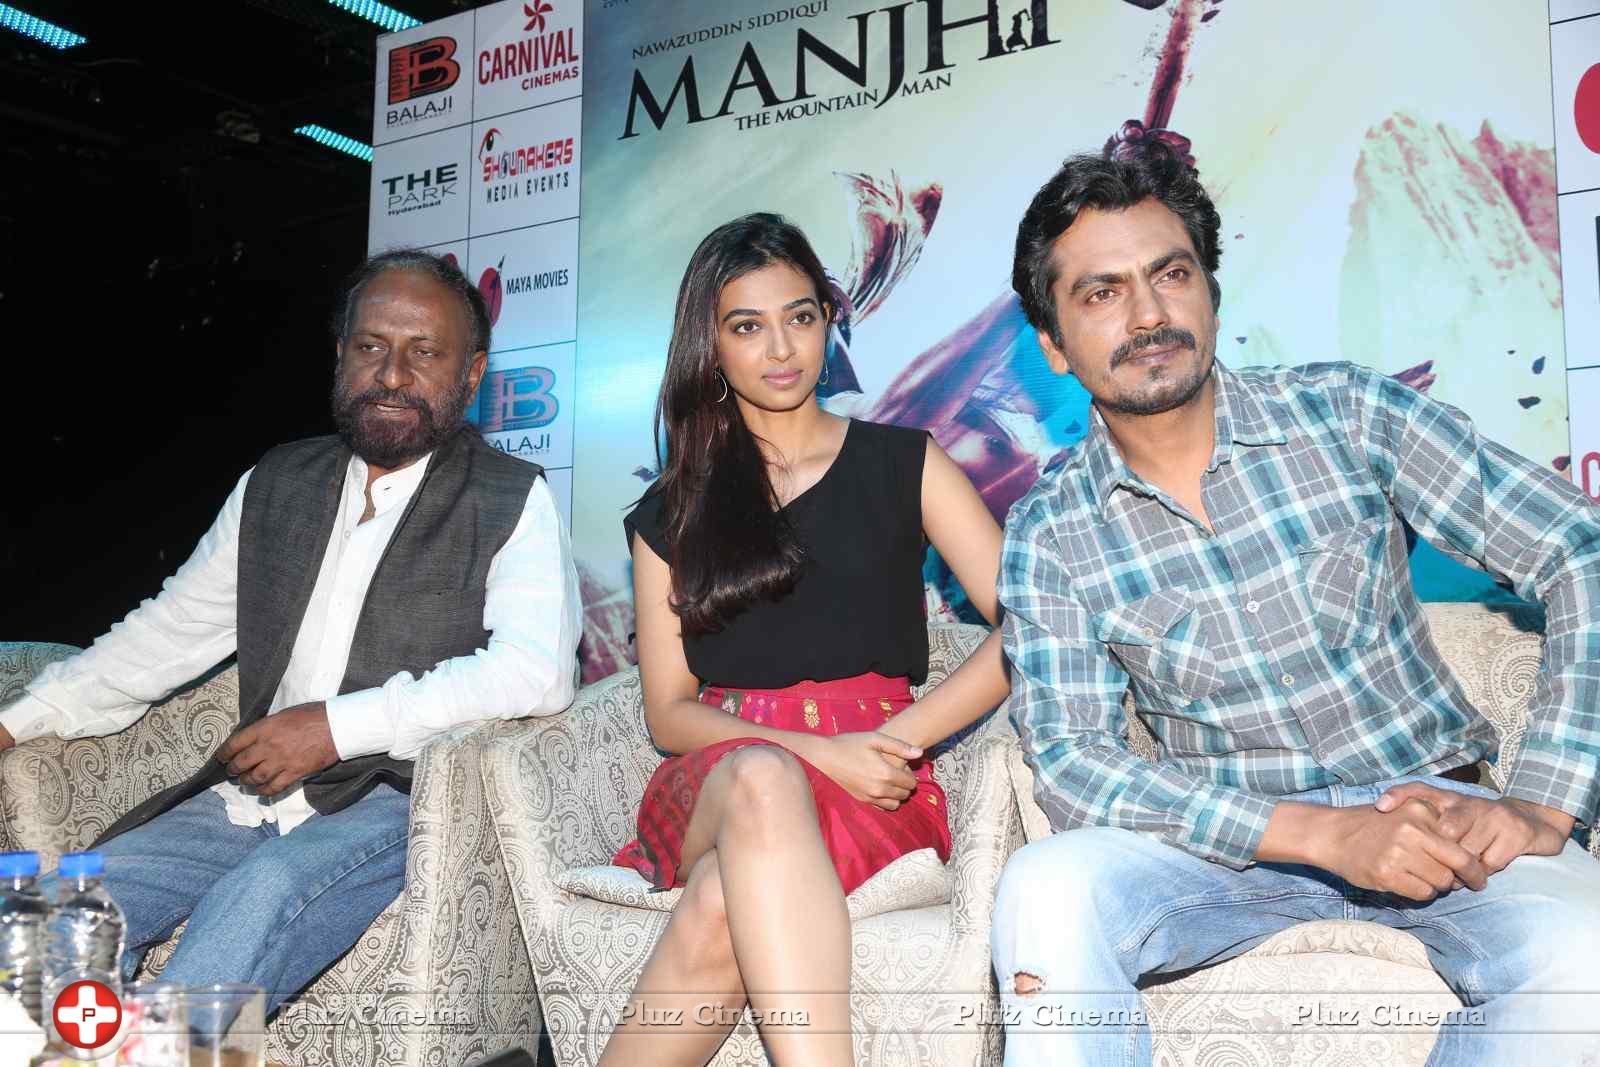 Manjhi Movie Press Meet Stills | Picture 1092784